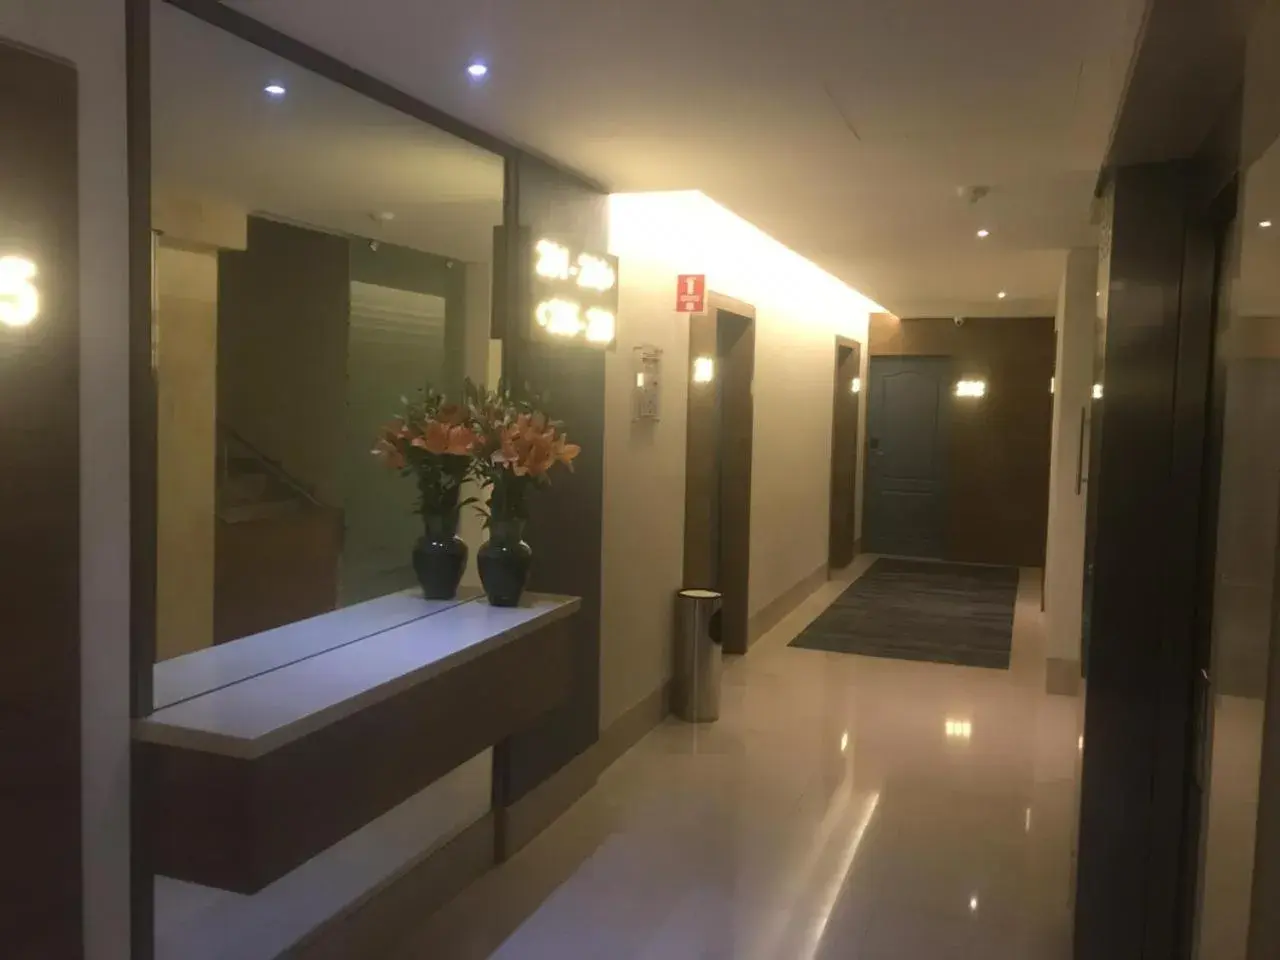 Area and facilities, Bathroom in Hotel Expo Abastos